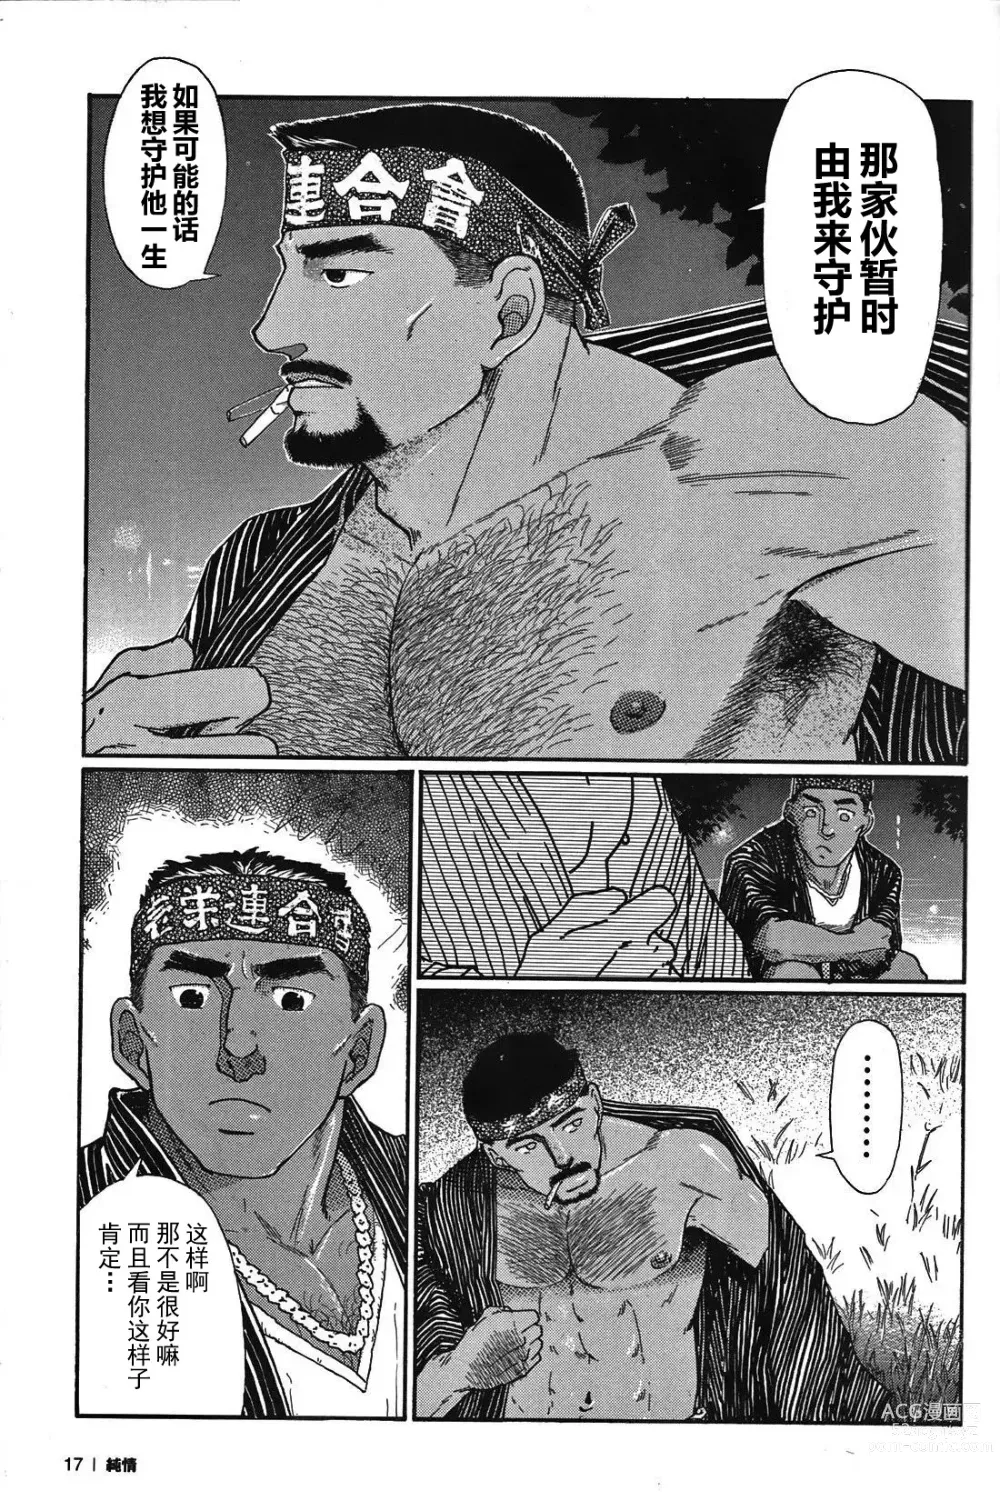 Page 16 of manga 纯情-第一章-纯情!!